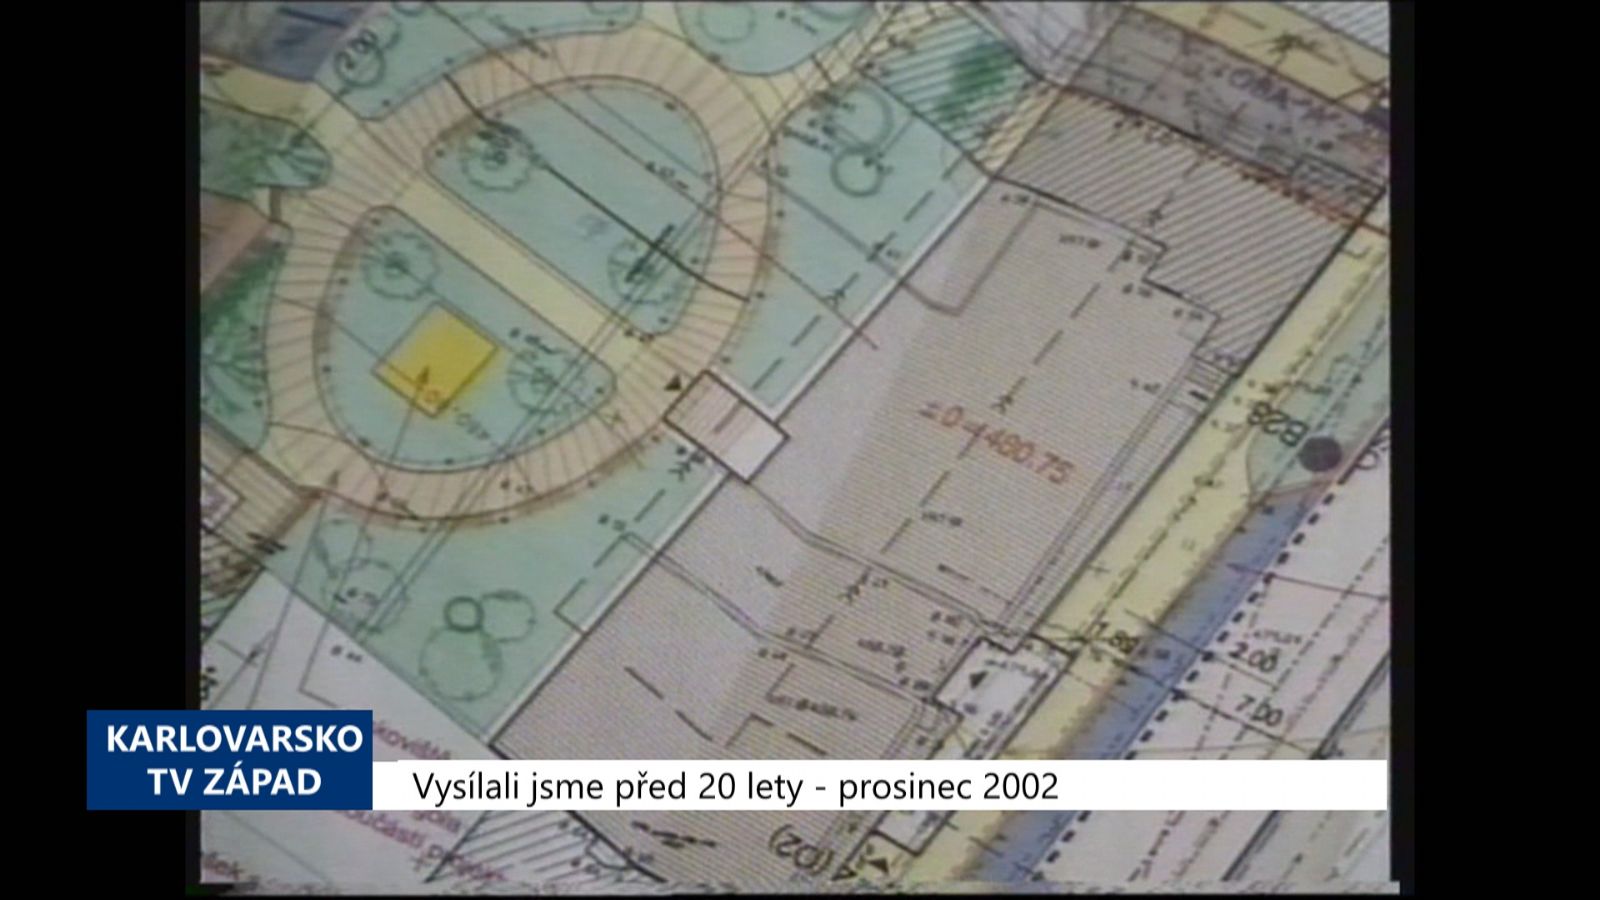 2002 – Cheb: Bytový dům K nemocnici se bude splácet 20 let (TV Západ)